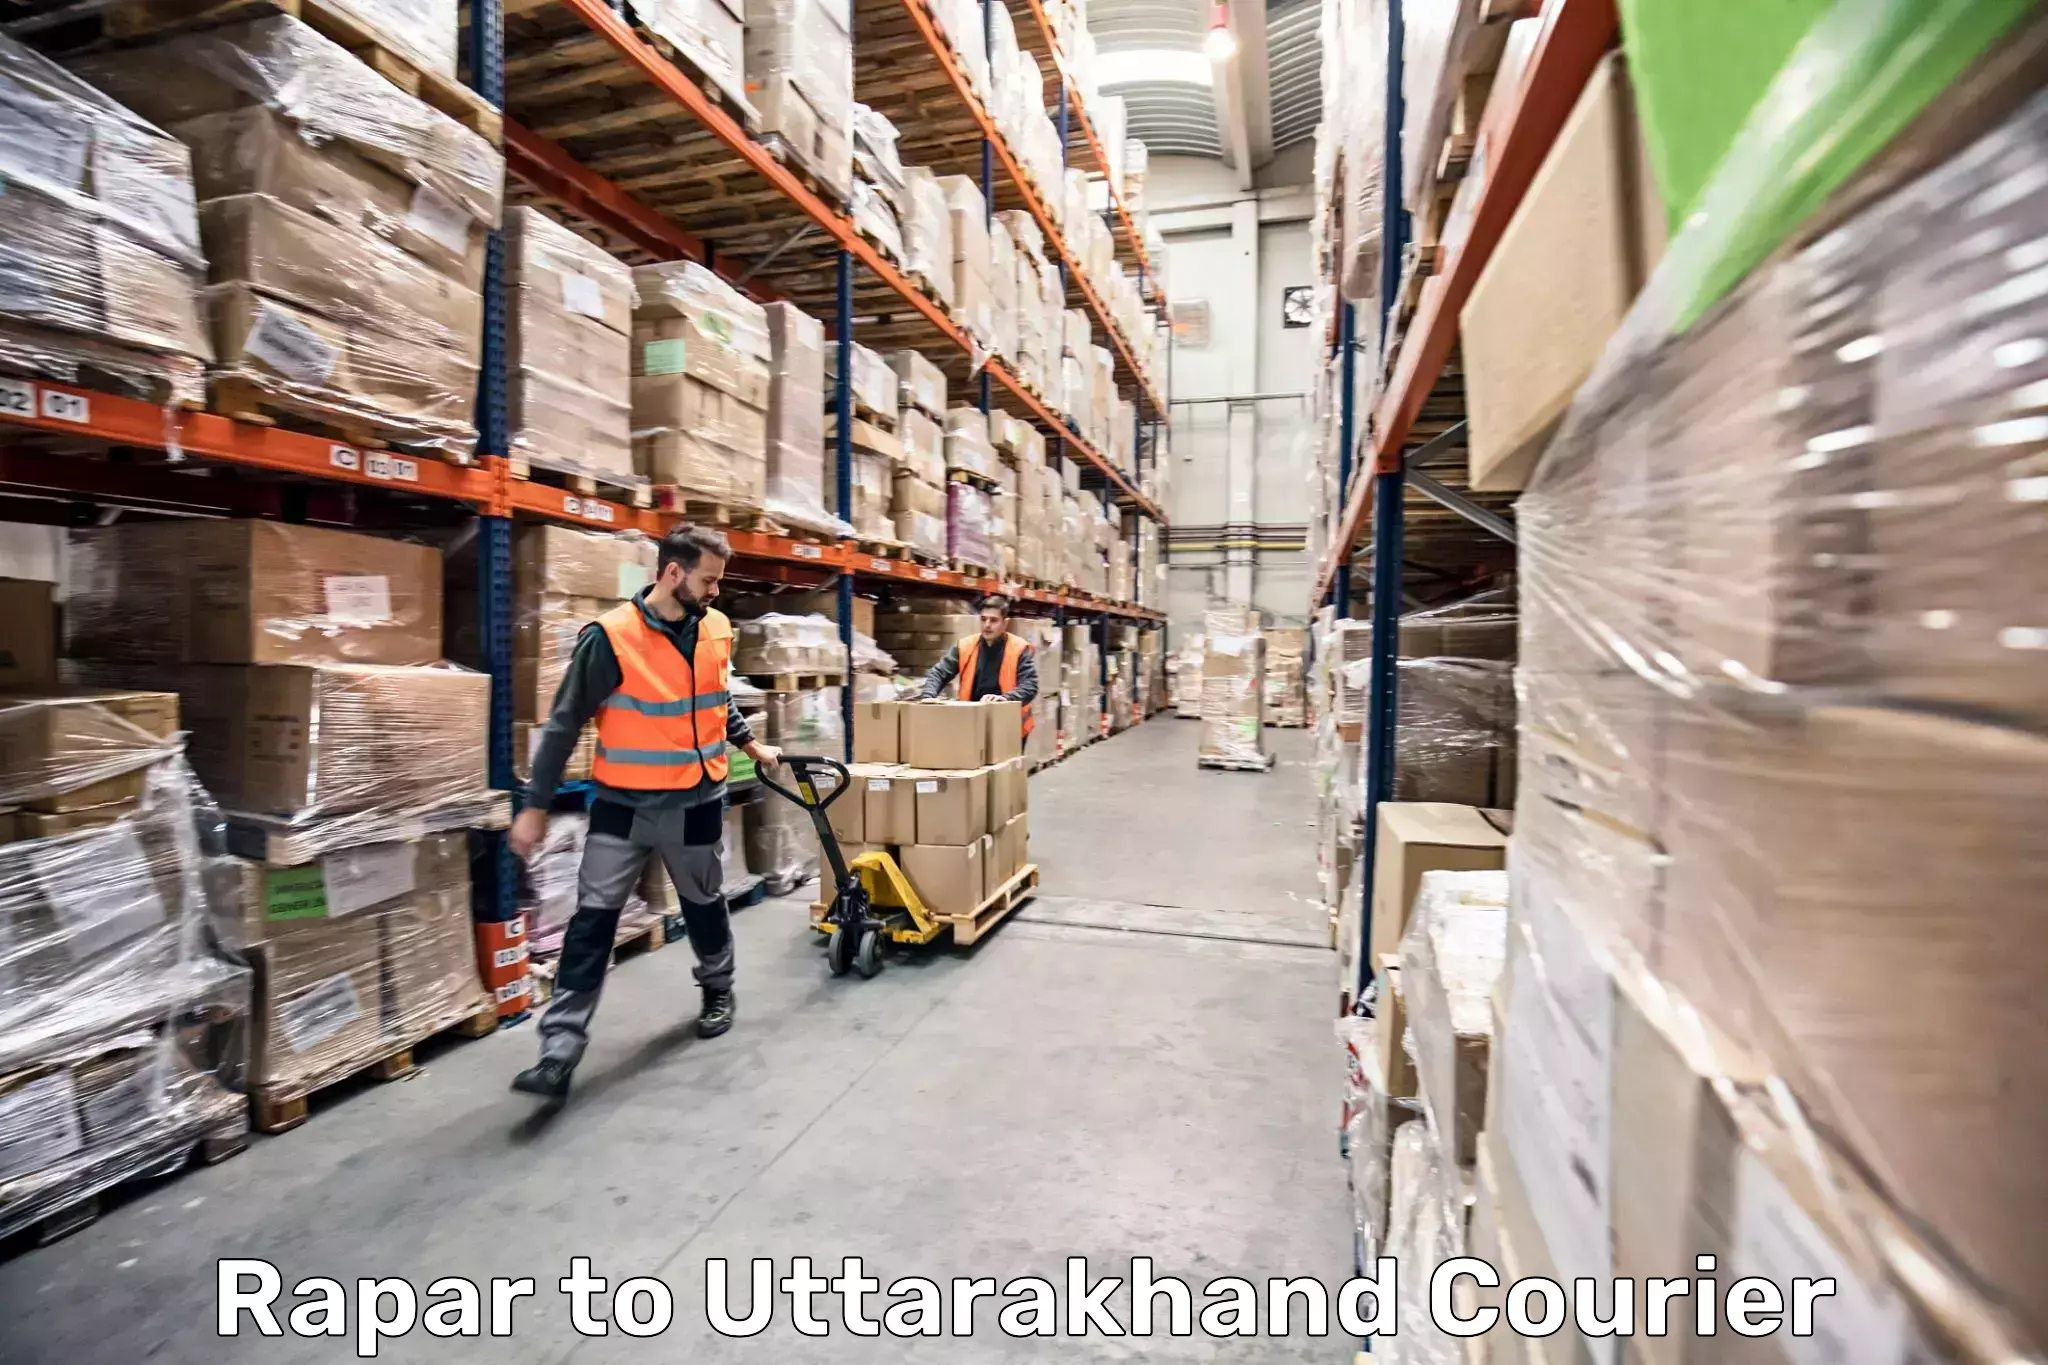 Urgent luggage shipment Rapar to Uttarakhand